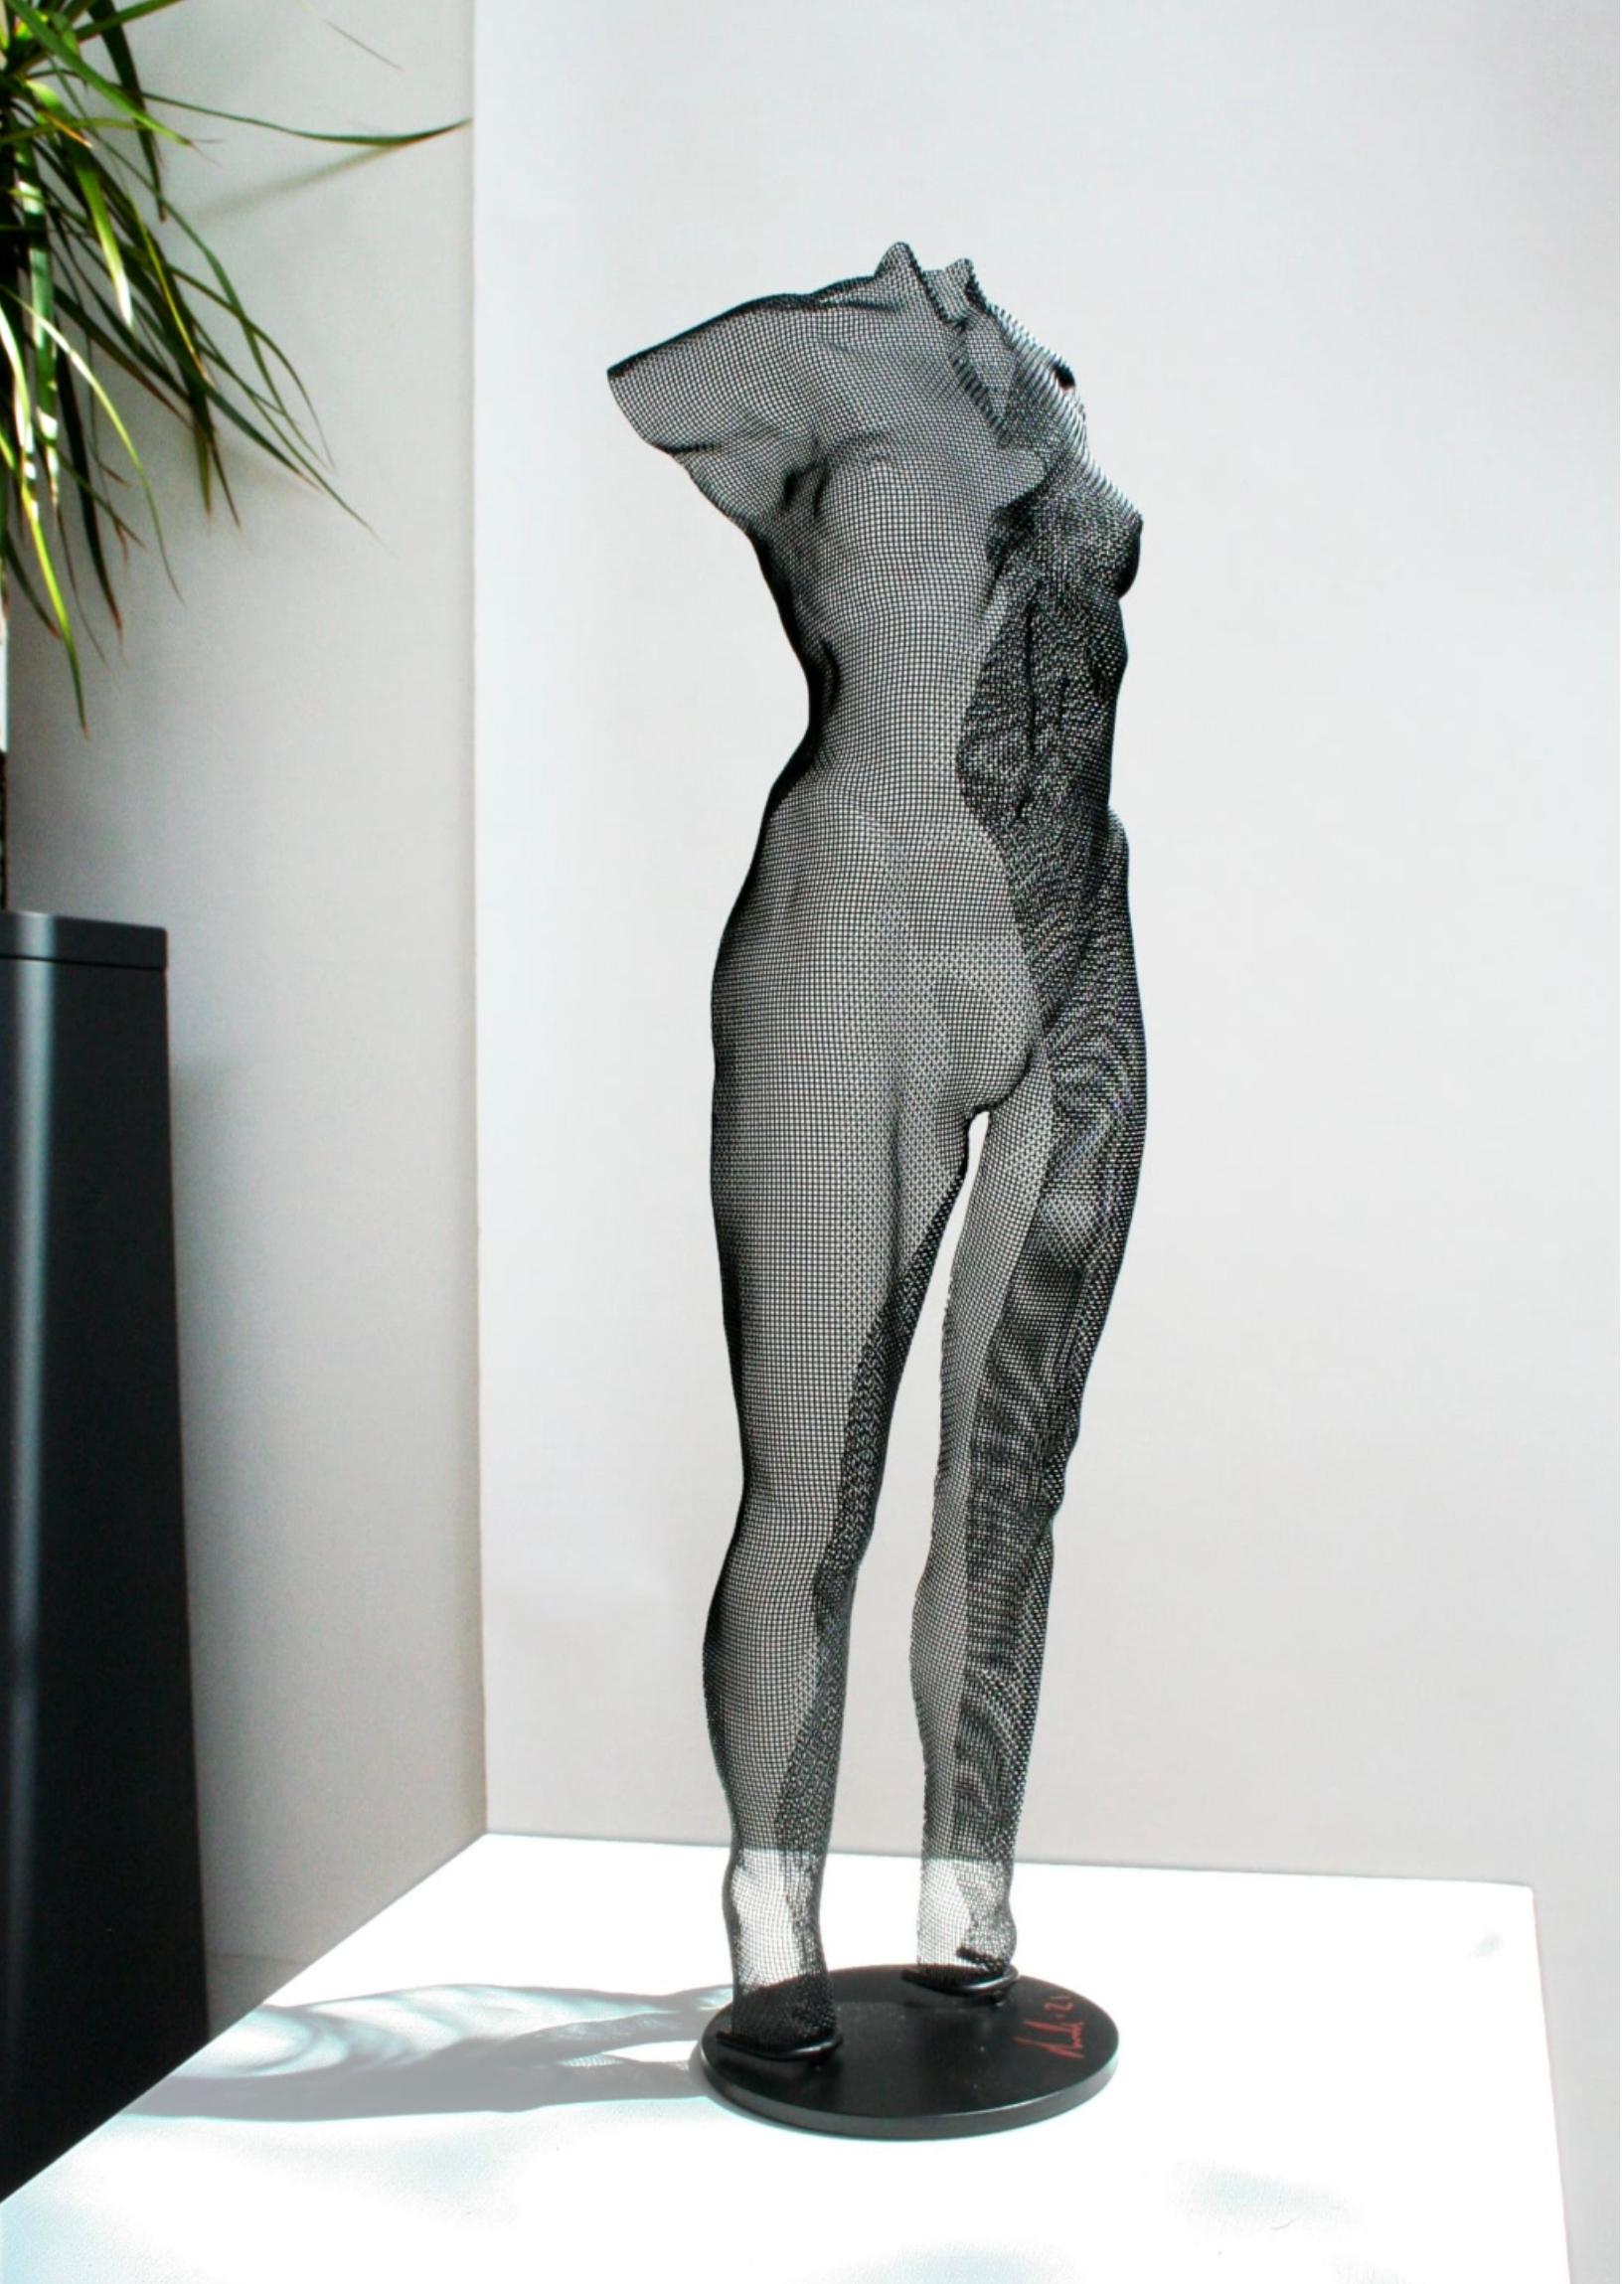 David Begbie Nude Sculpture - YUBE, 2021, Steel Mesh Sculpture